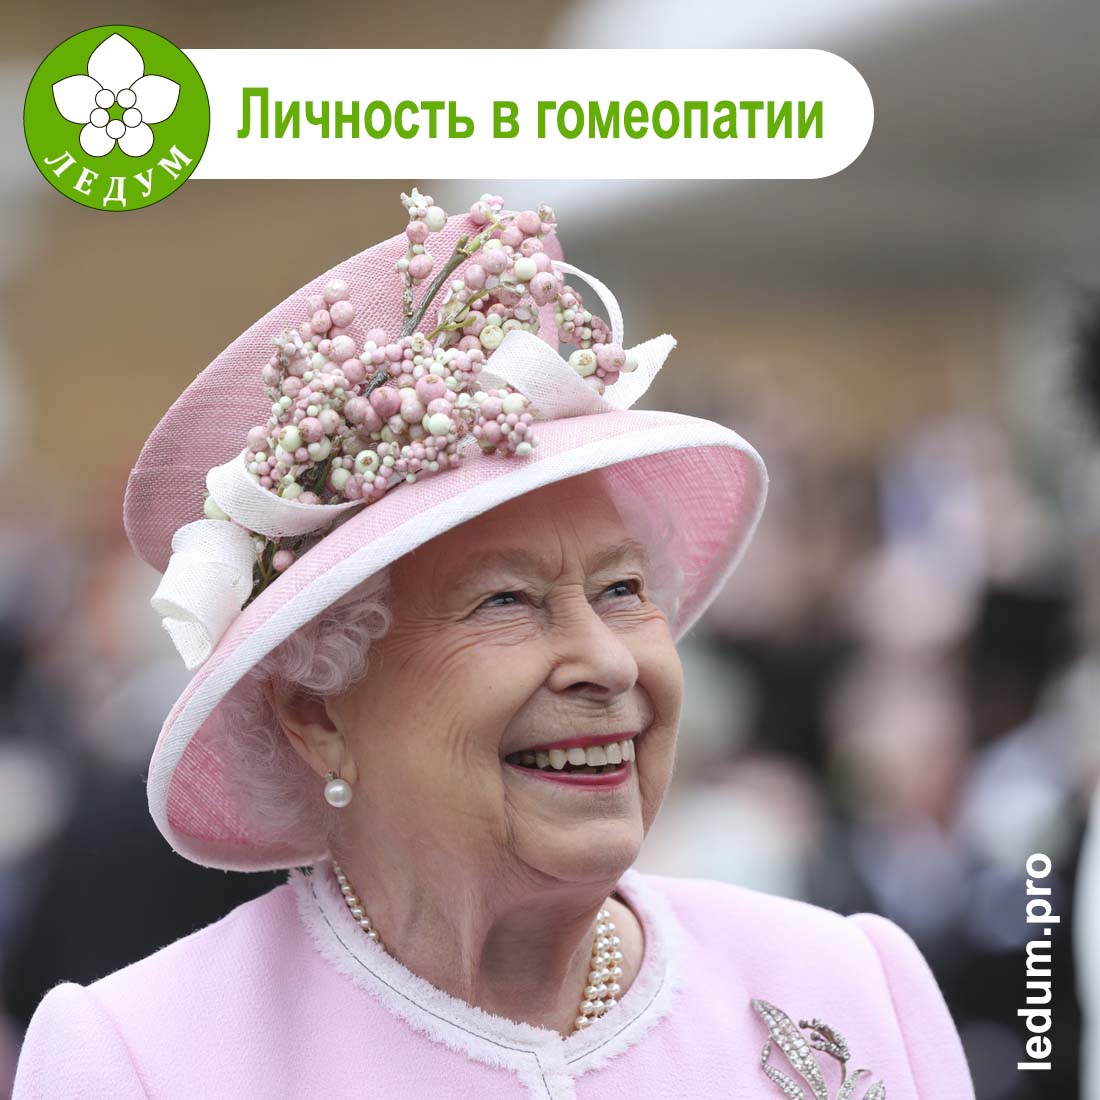 Личность в гомеопатии: королева Елизавета II